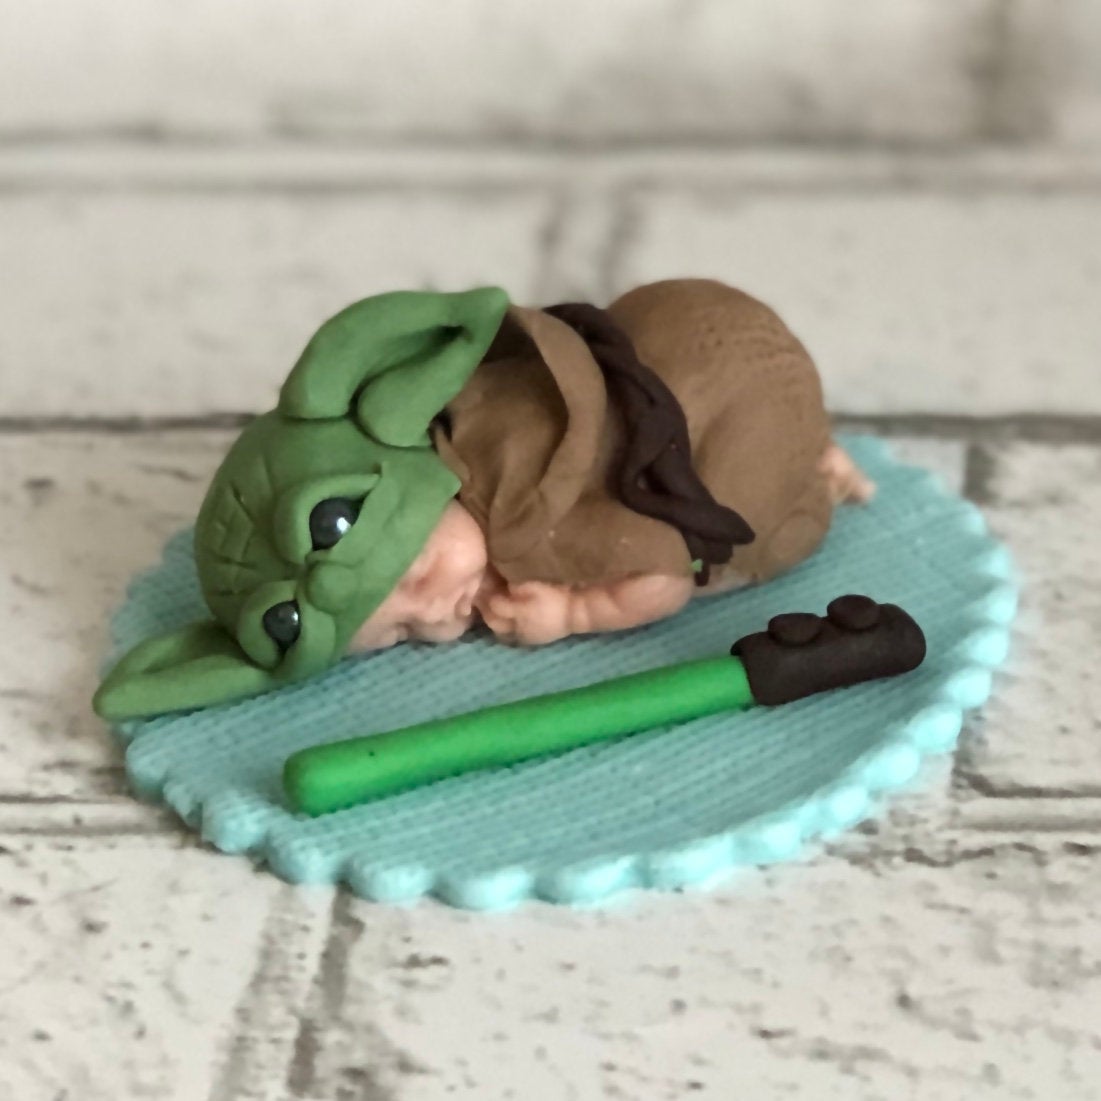 Baby Yoda Baby Shower Inspired Cake Topper / Baby Yoda / Star Wars / Yoda / Baby / Cake Topper / Fondant / Fondant Cake Topper /